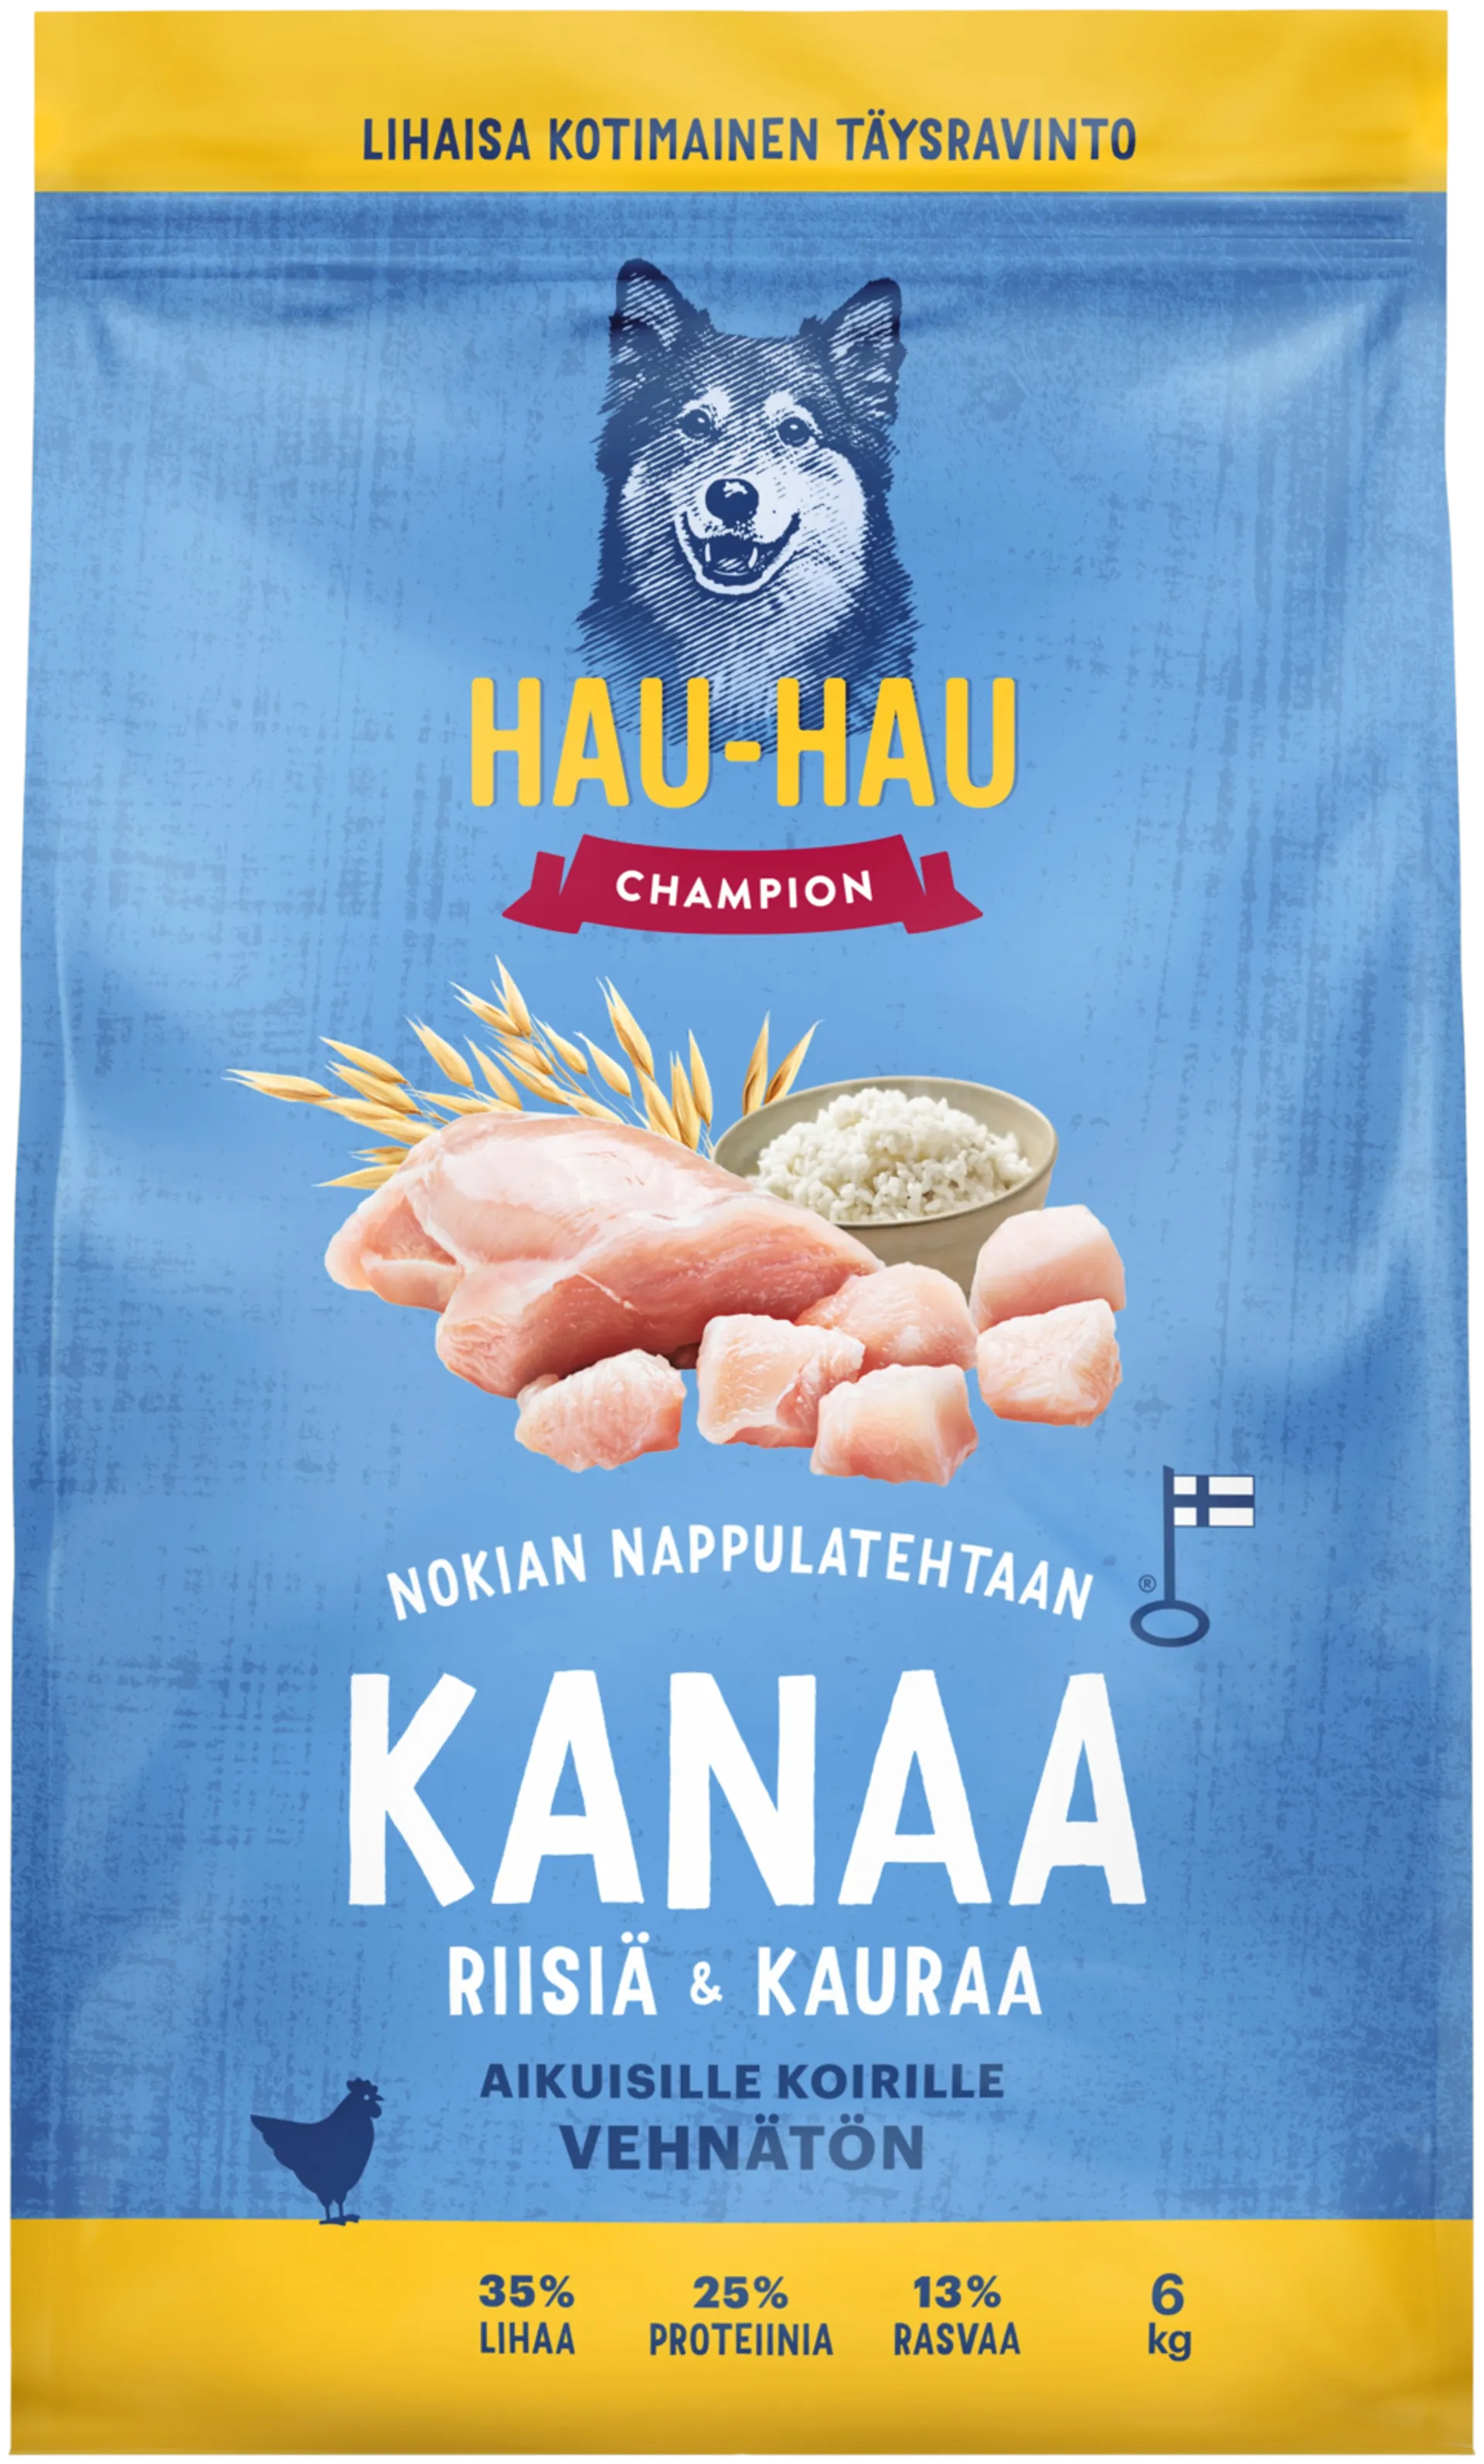 Hau-Hau Champion Nokian Nappulatehtaan Kanaa, riisiä & kauraa täysravinto aikuisille koirille 6 kg